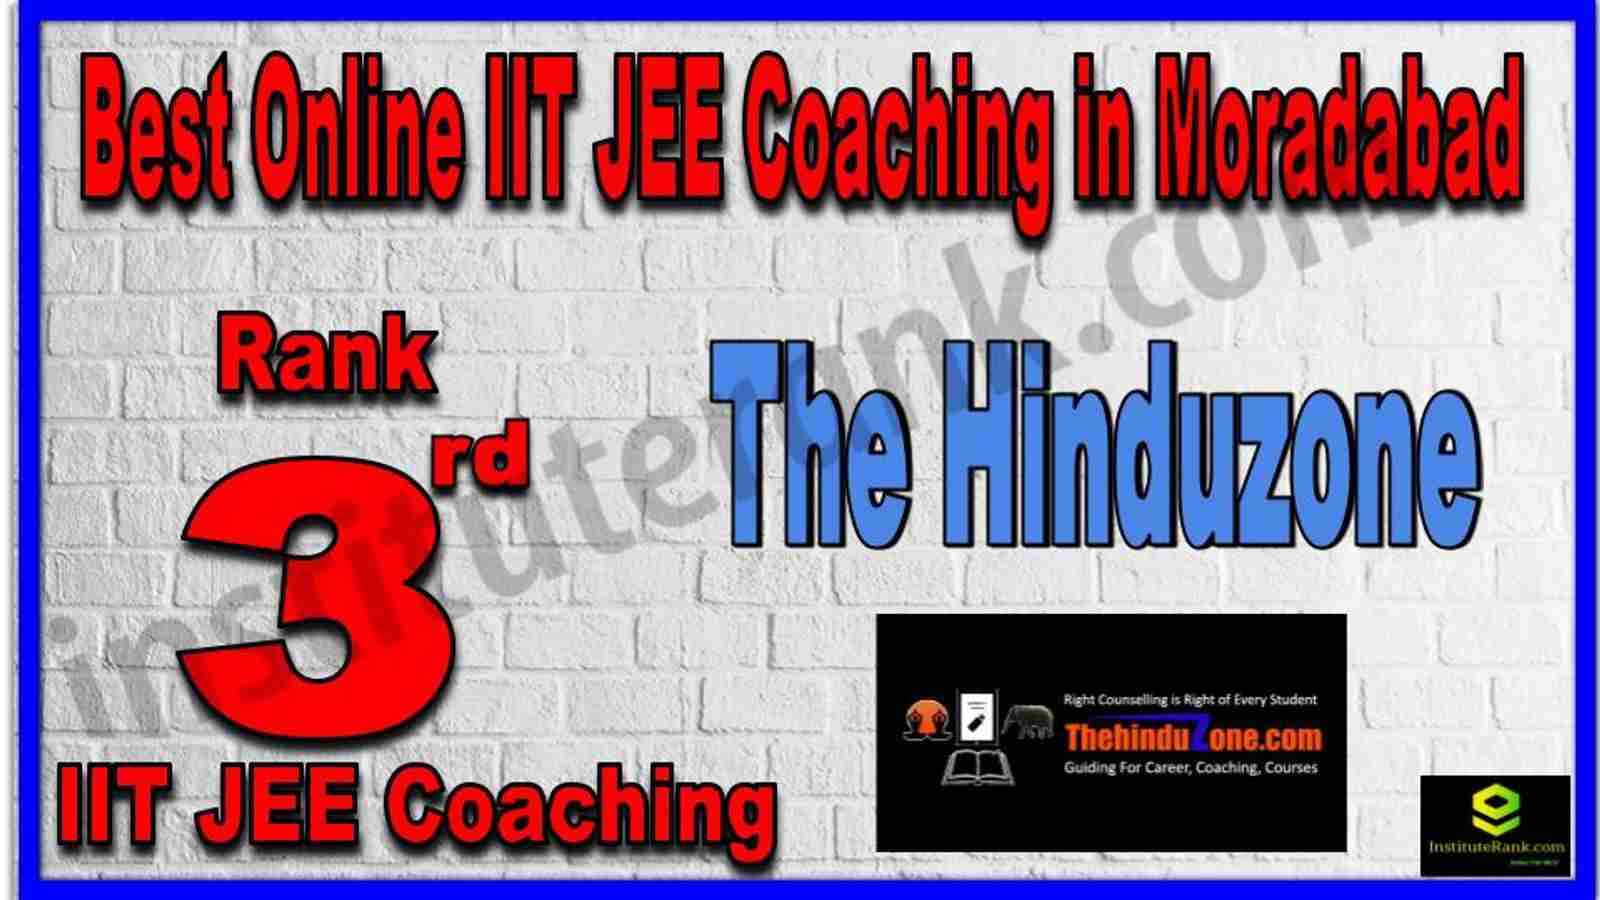 Rank 3rd Best Online IIT JEE Coaching in Moradabad